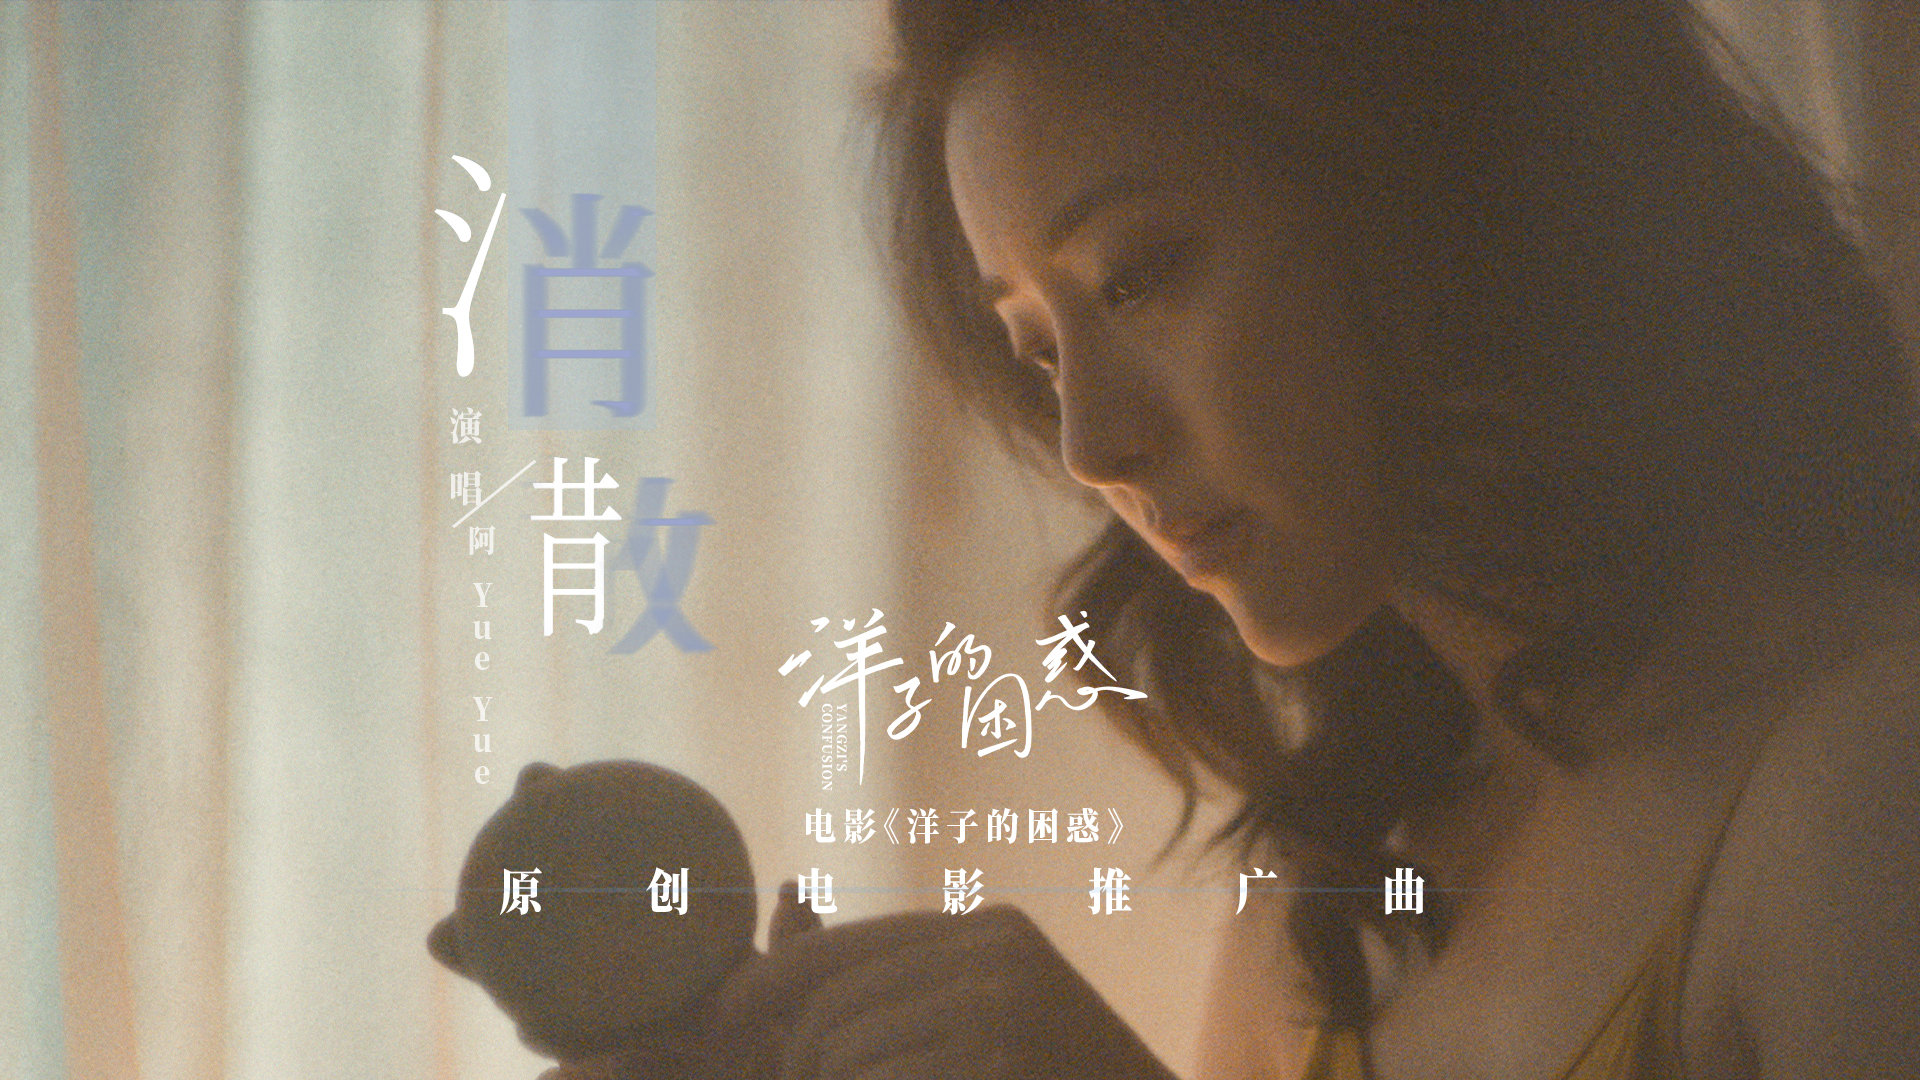 电影《洋子的困惑》发布首支原创推广曲《消散》MV